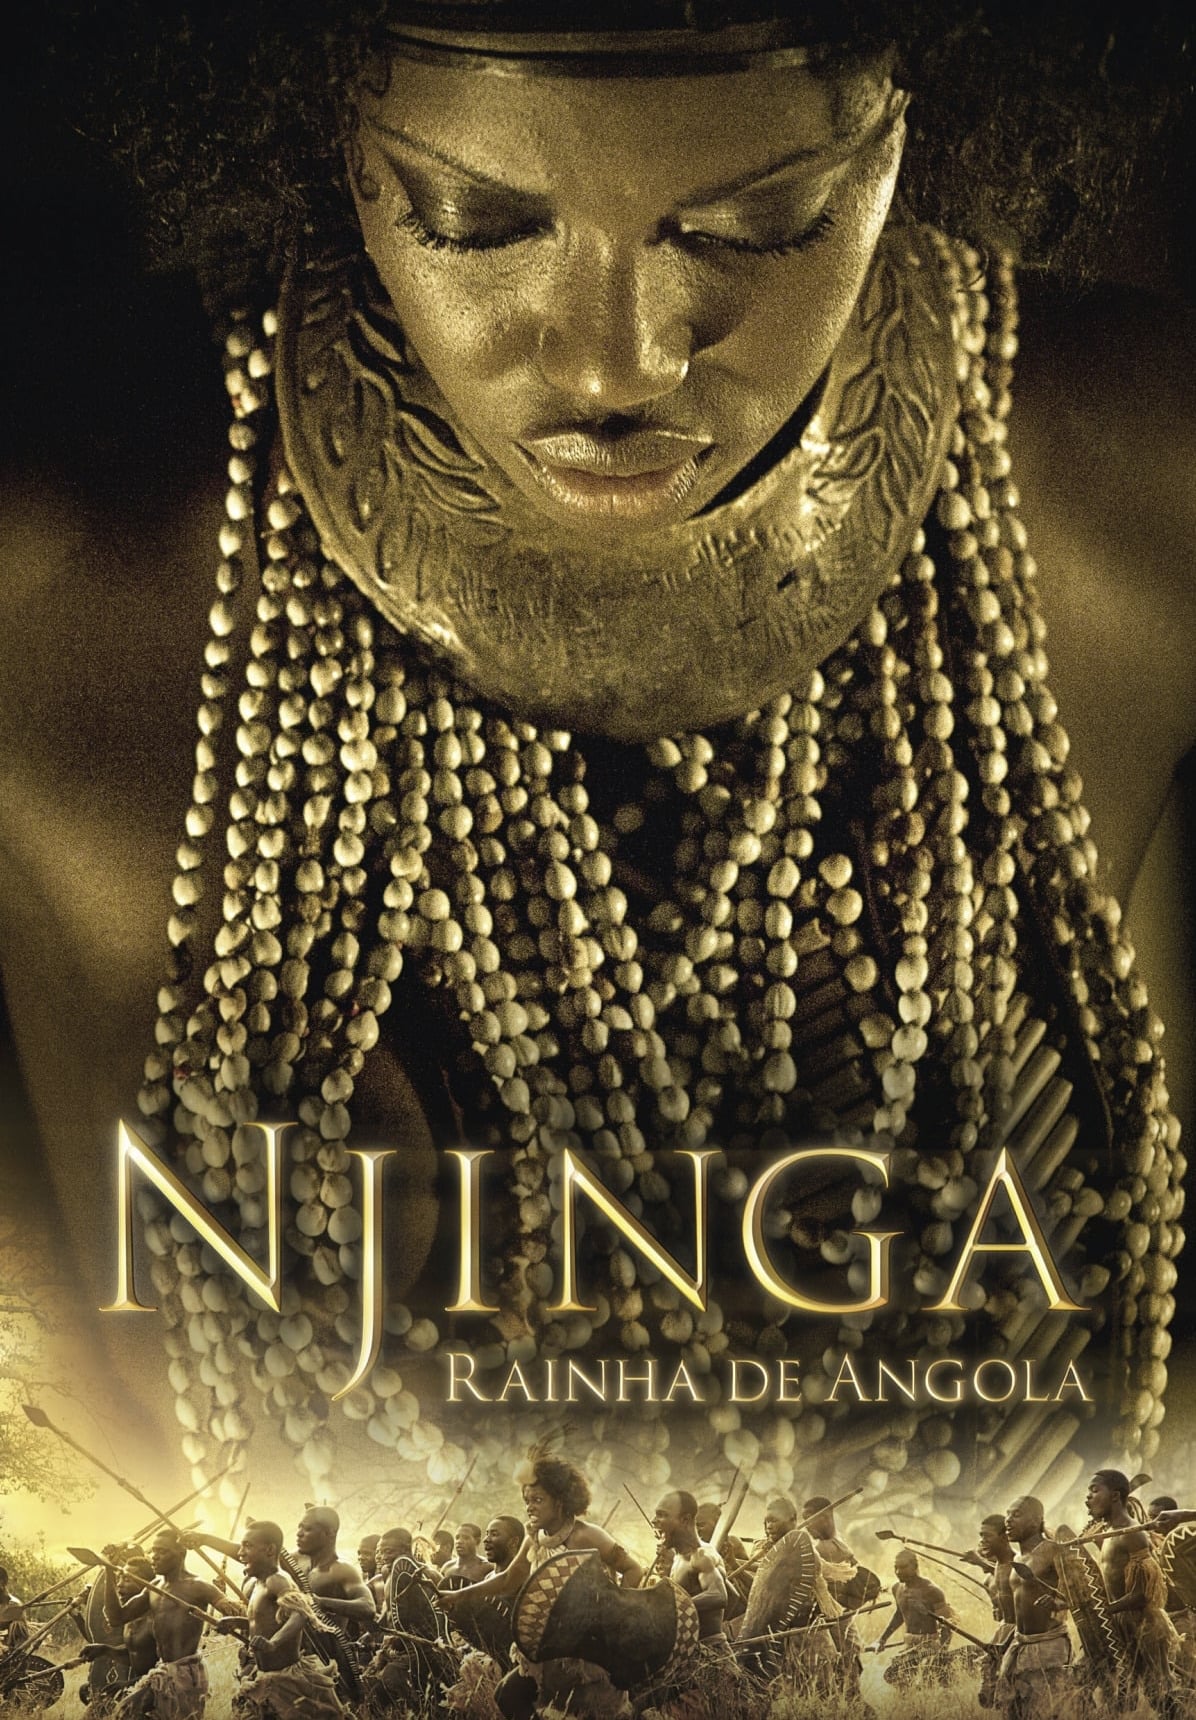 Nzinga, Queen of Angola